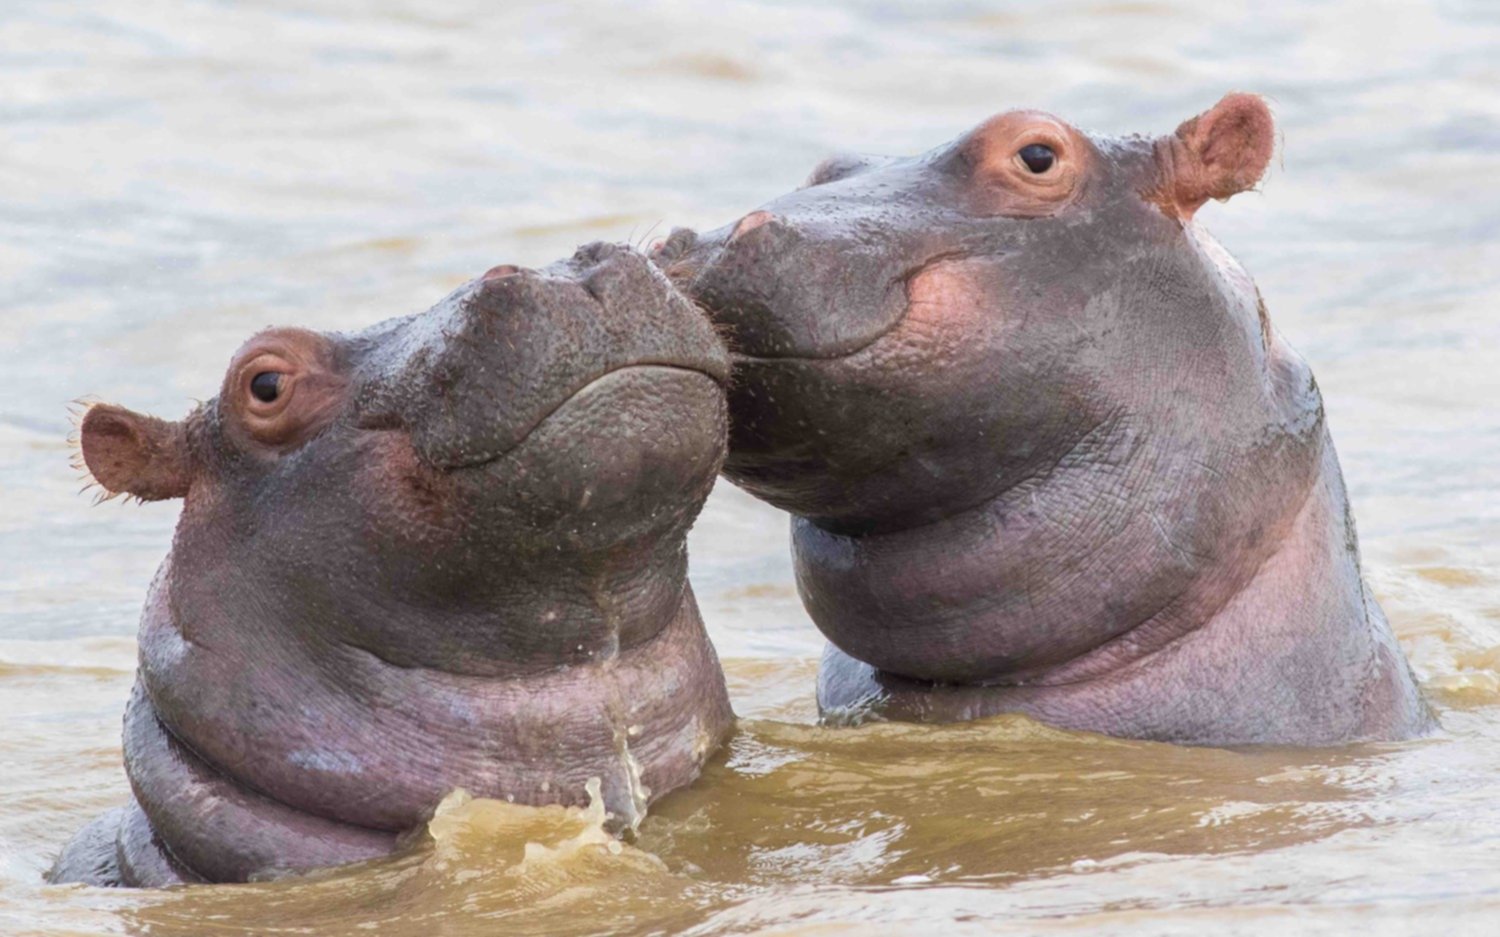 Dictamen de la corte: Los hipopótamos de Pablo Escobar son legalmente personas